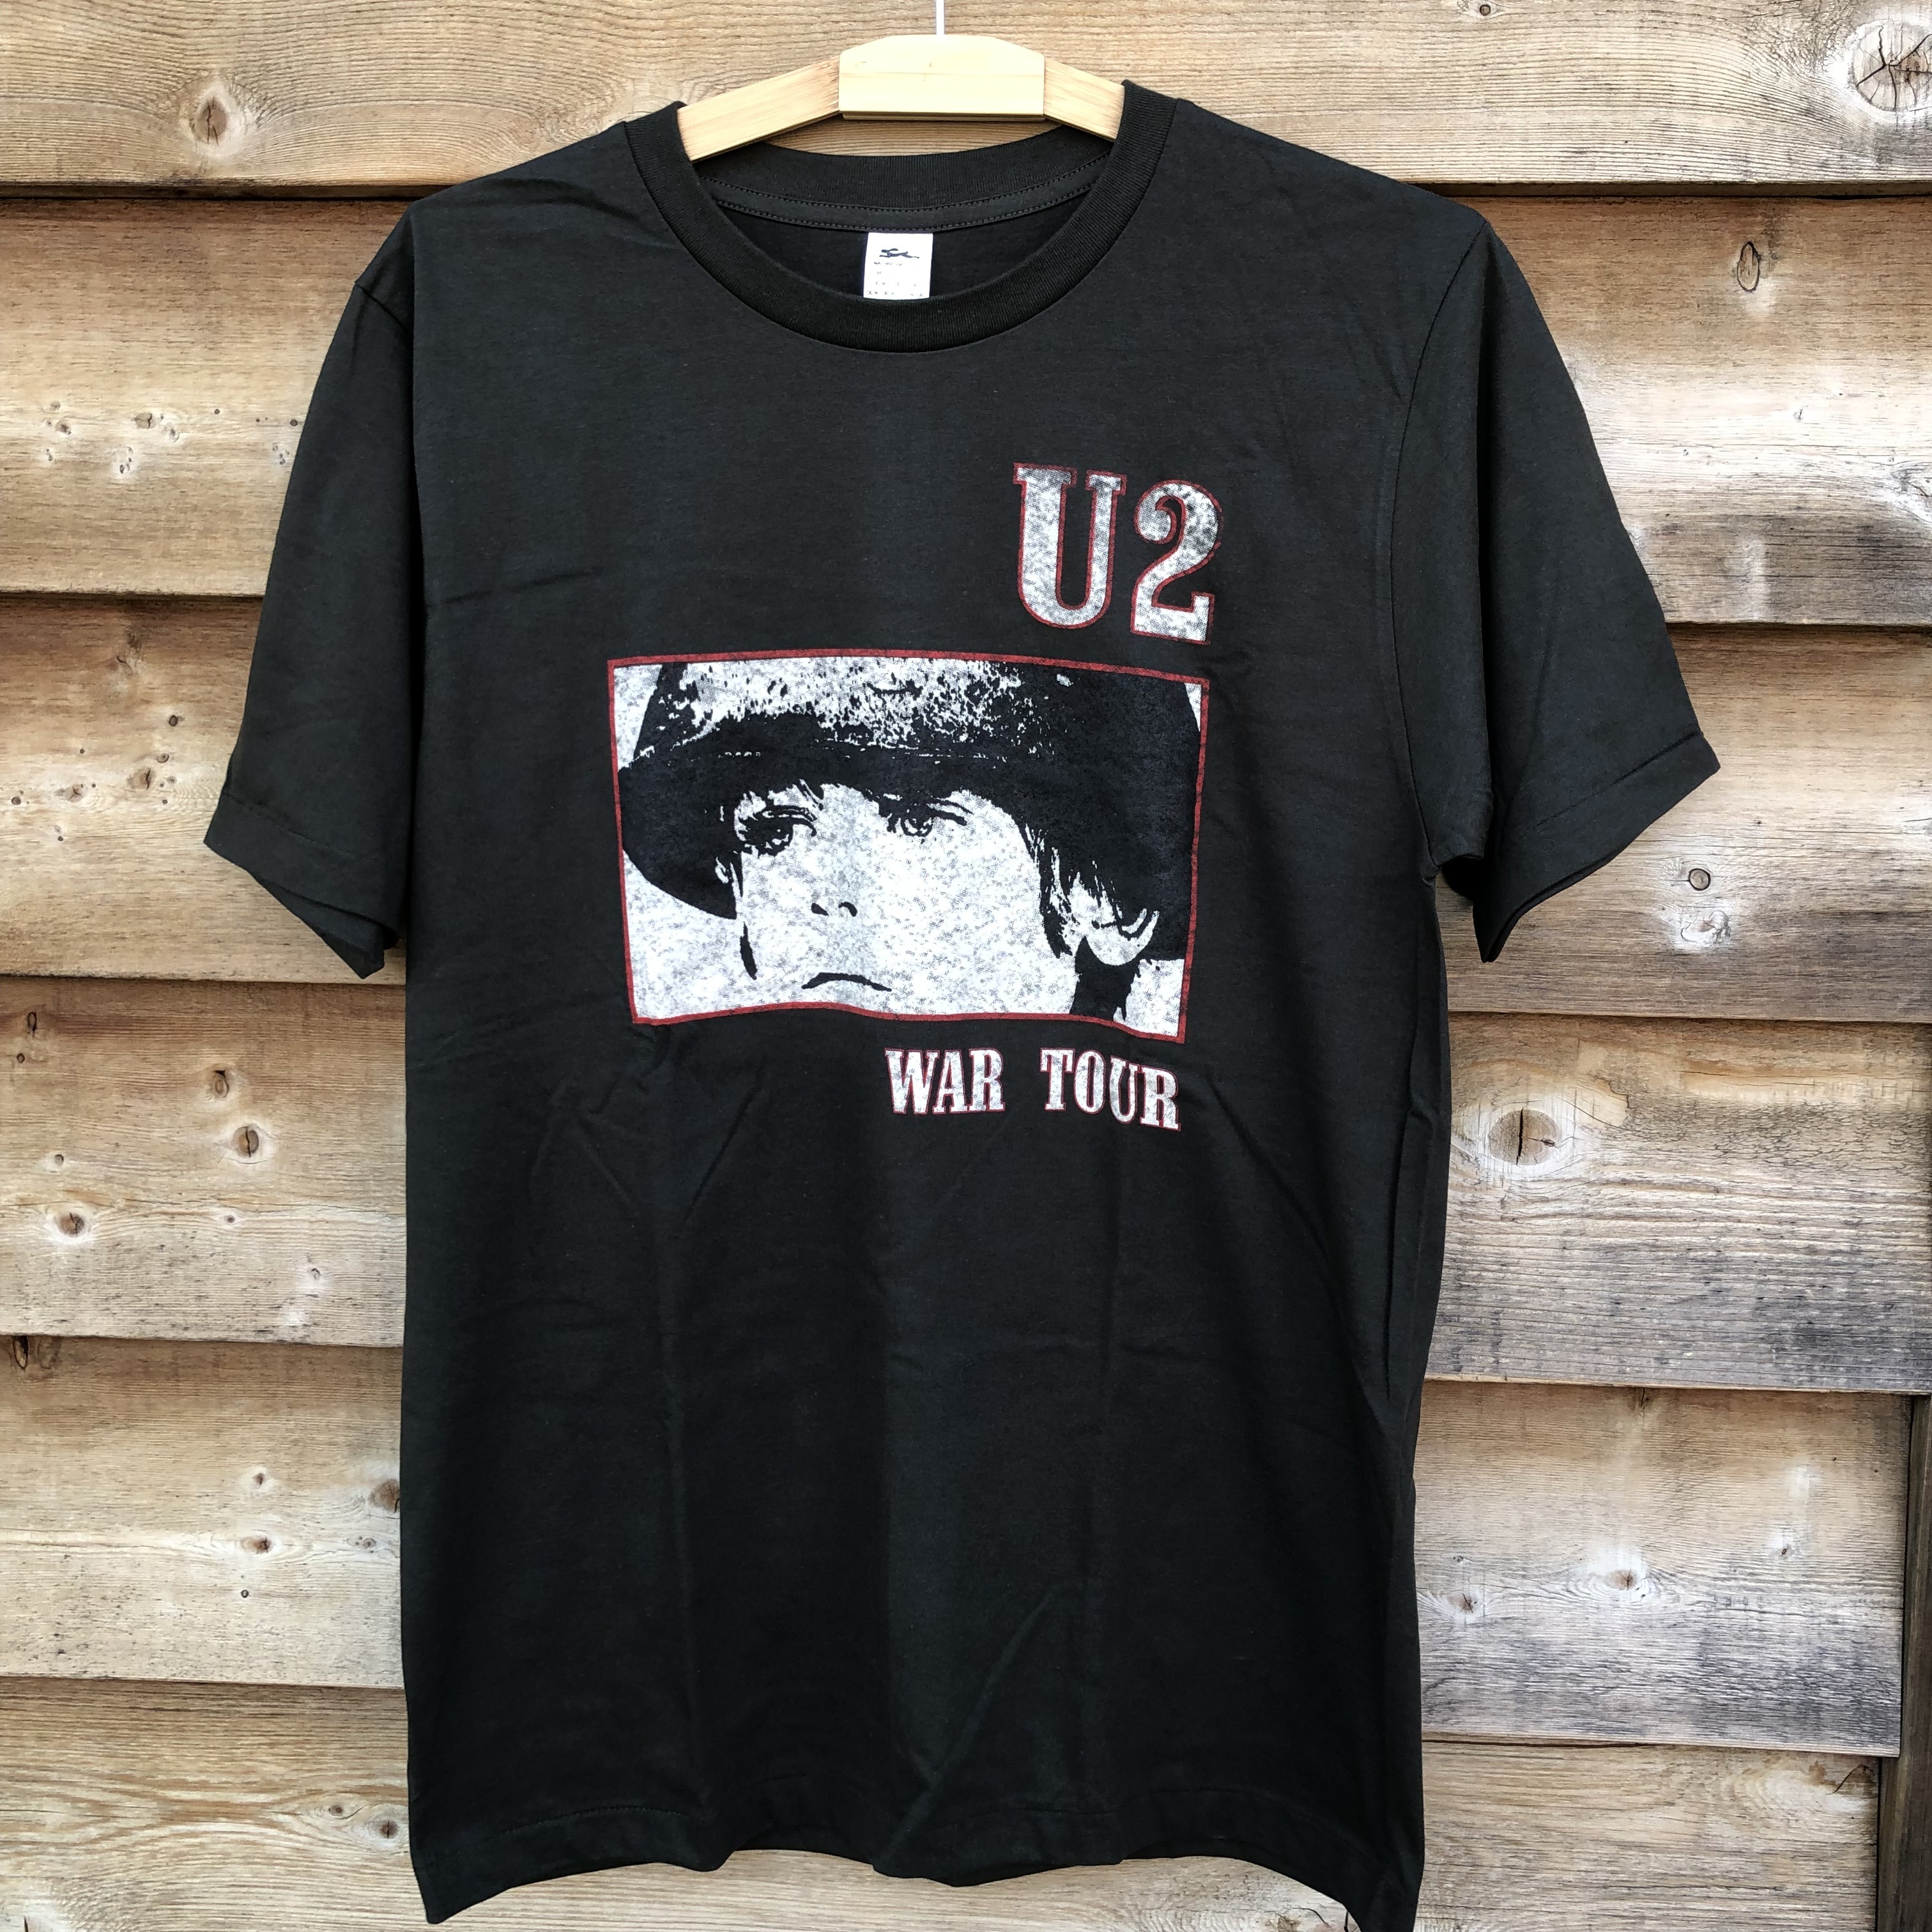 U2 TシャツPINKFLOYD - www.ietp.com